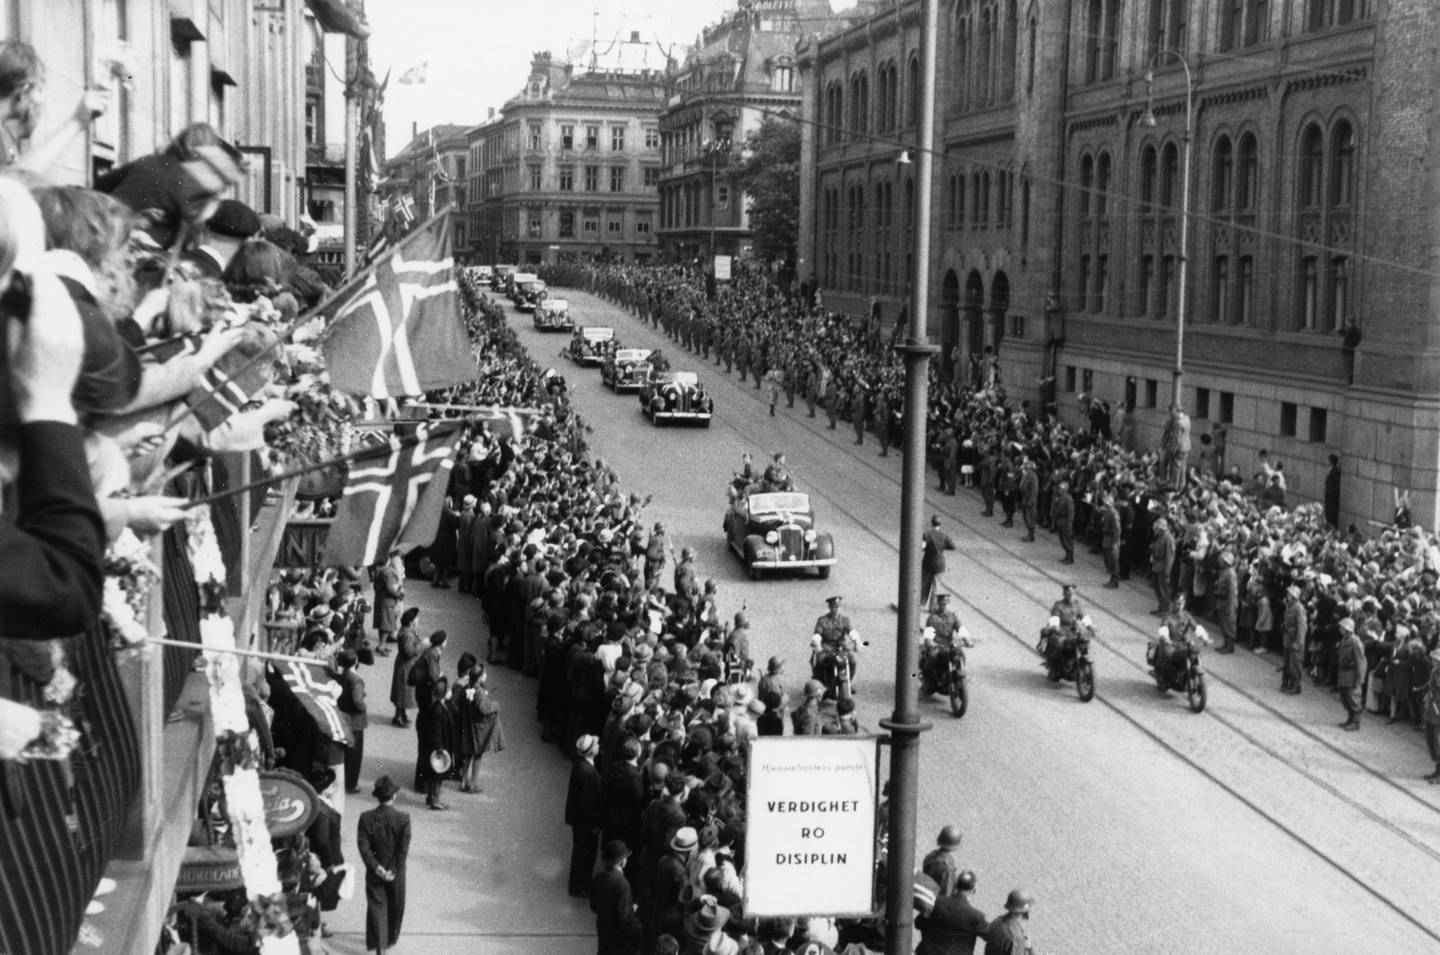 Kronprins Olav fikk en varm velkomst av jublende folkemasser i Oslo ved hjemkomsten den 13. mai 1945. 
Norge feiret frigjøringen etter fem år under tysk okkupasjon i maidagene 1945. Etter feiringen ventet rettsoppgjøret med forrædere og medløpere av den tyske okkupasjonsmakten, som inkluderte gjennomføring av dødsstraffen innført av regjeringen i 1941.